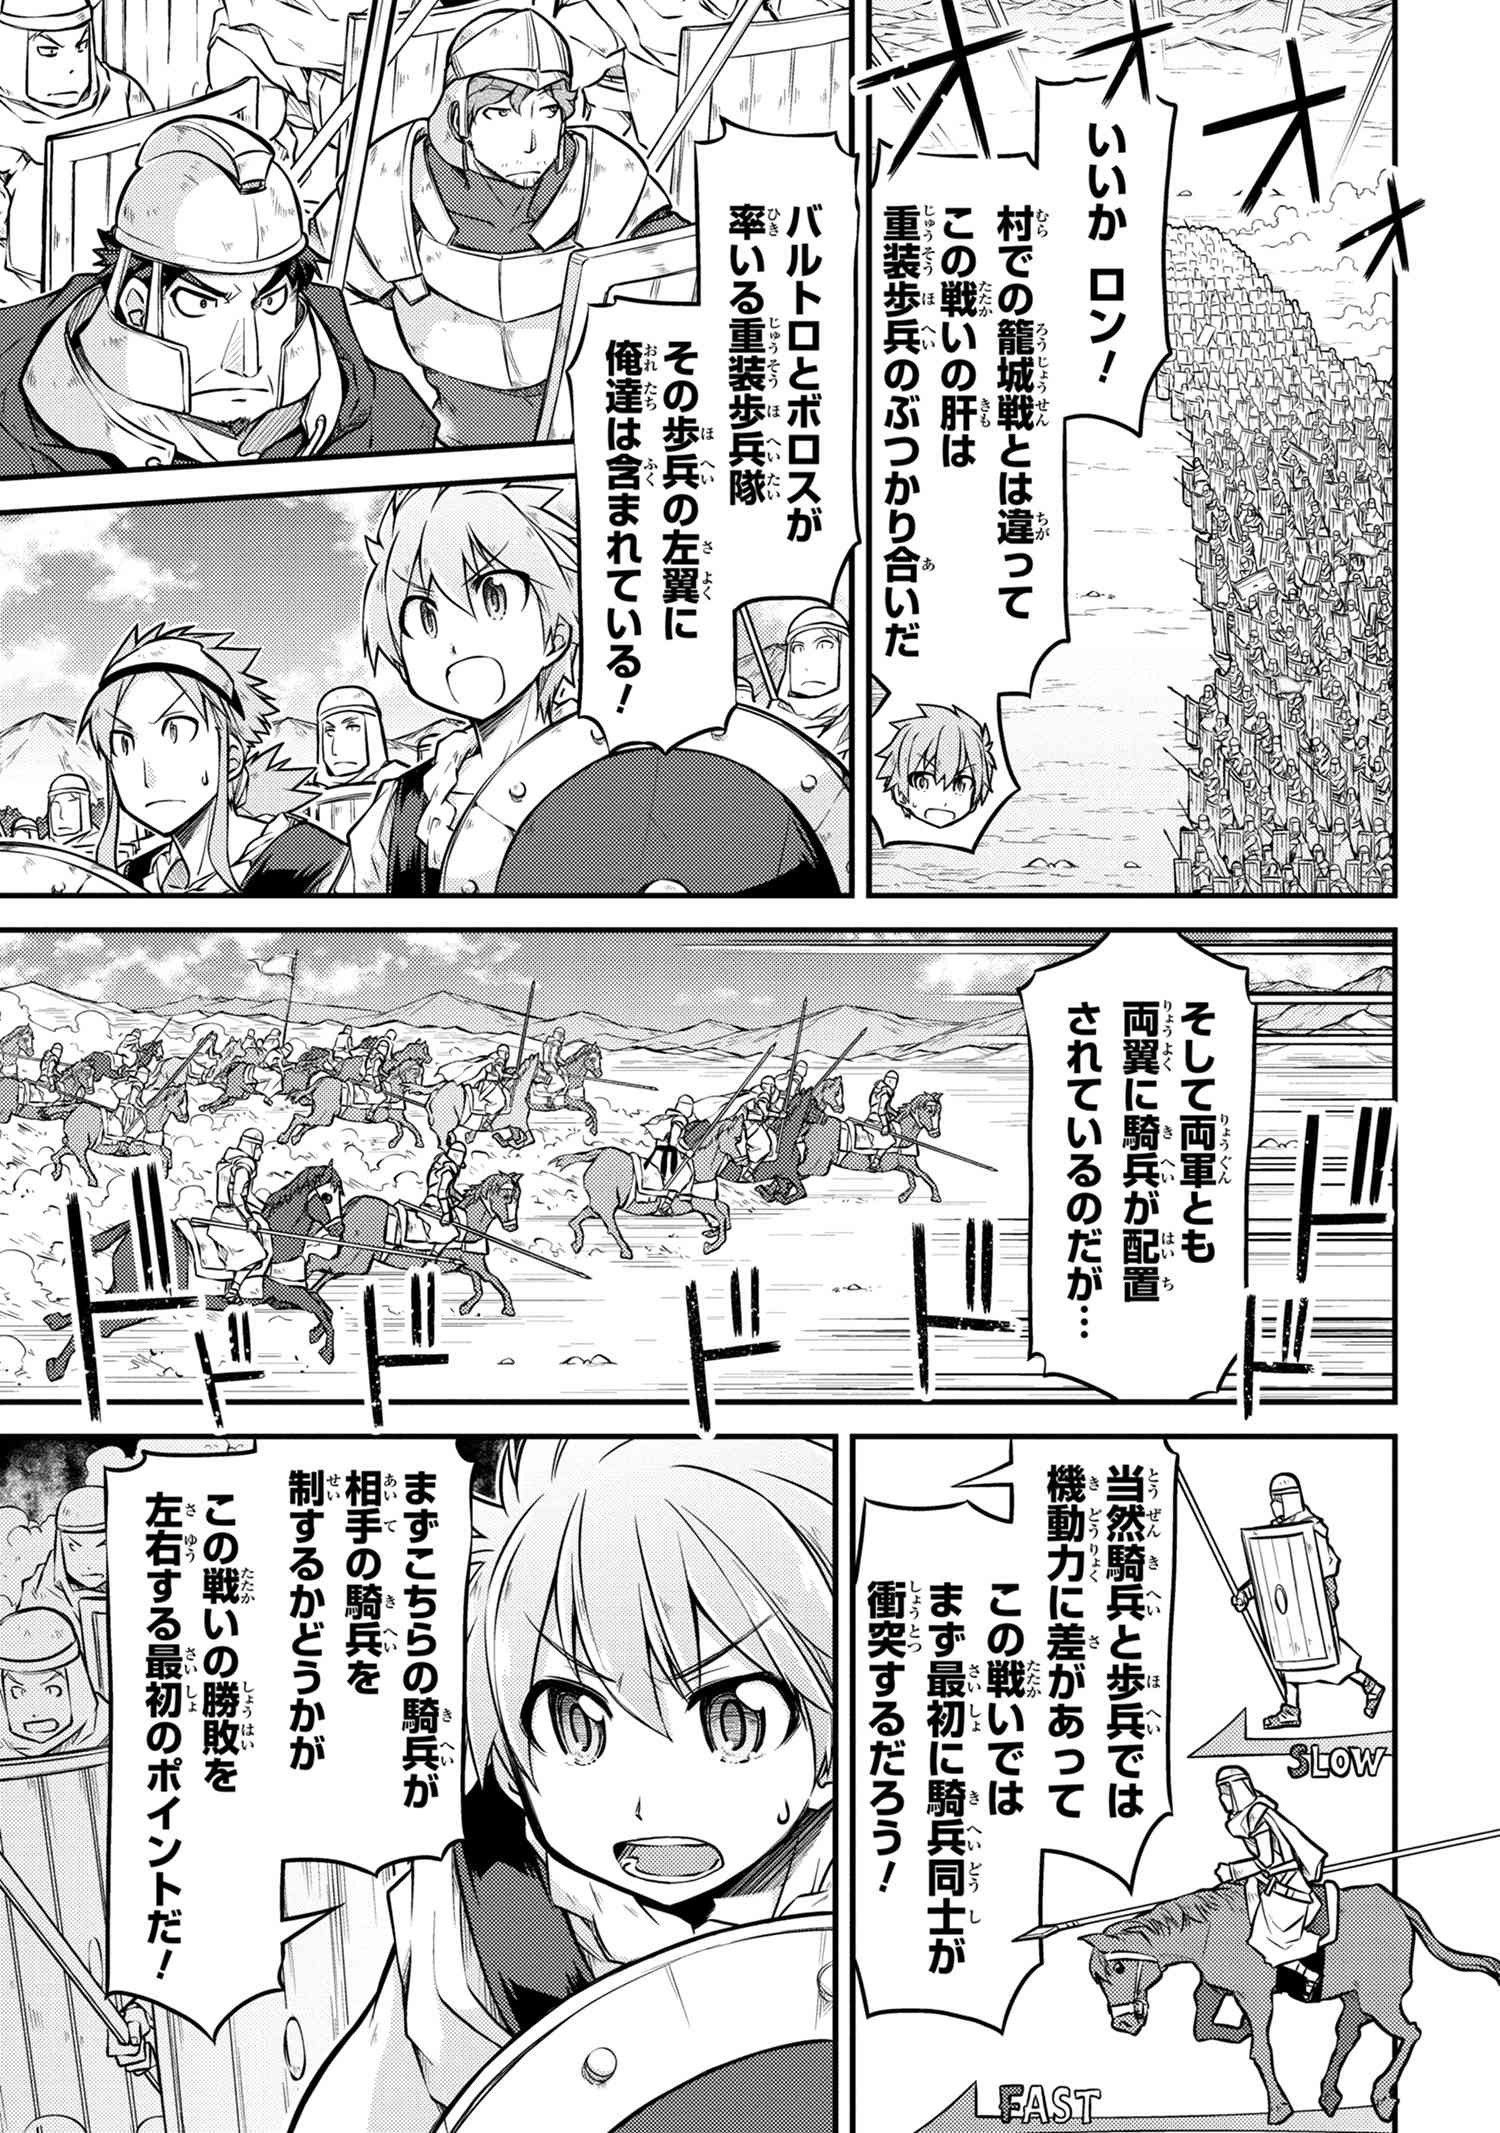 Isekai Kenkokuki Chapter 26 2 Page 11 Raw Sen Manga